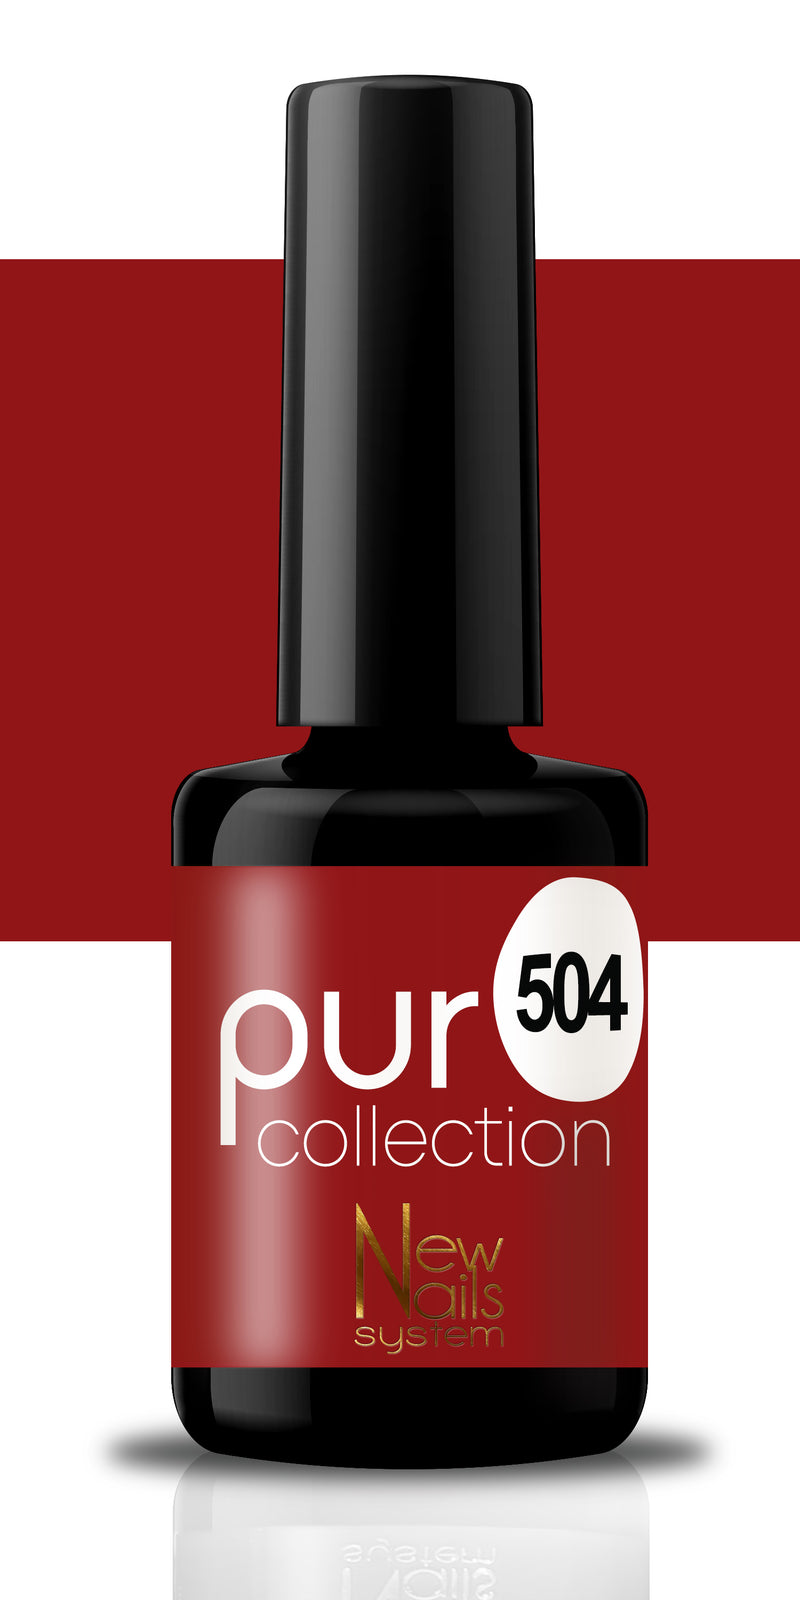 Puro collection 504 colore Rouge Passion semipermanente 5ml